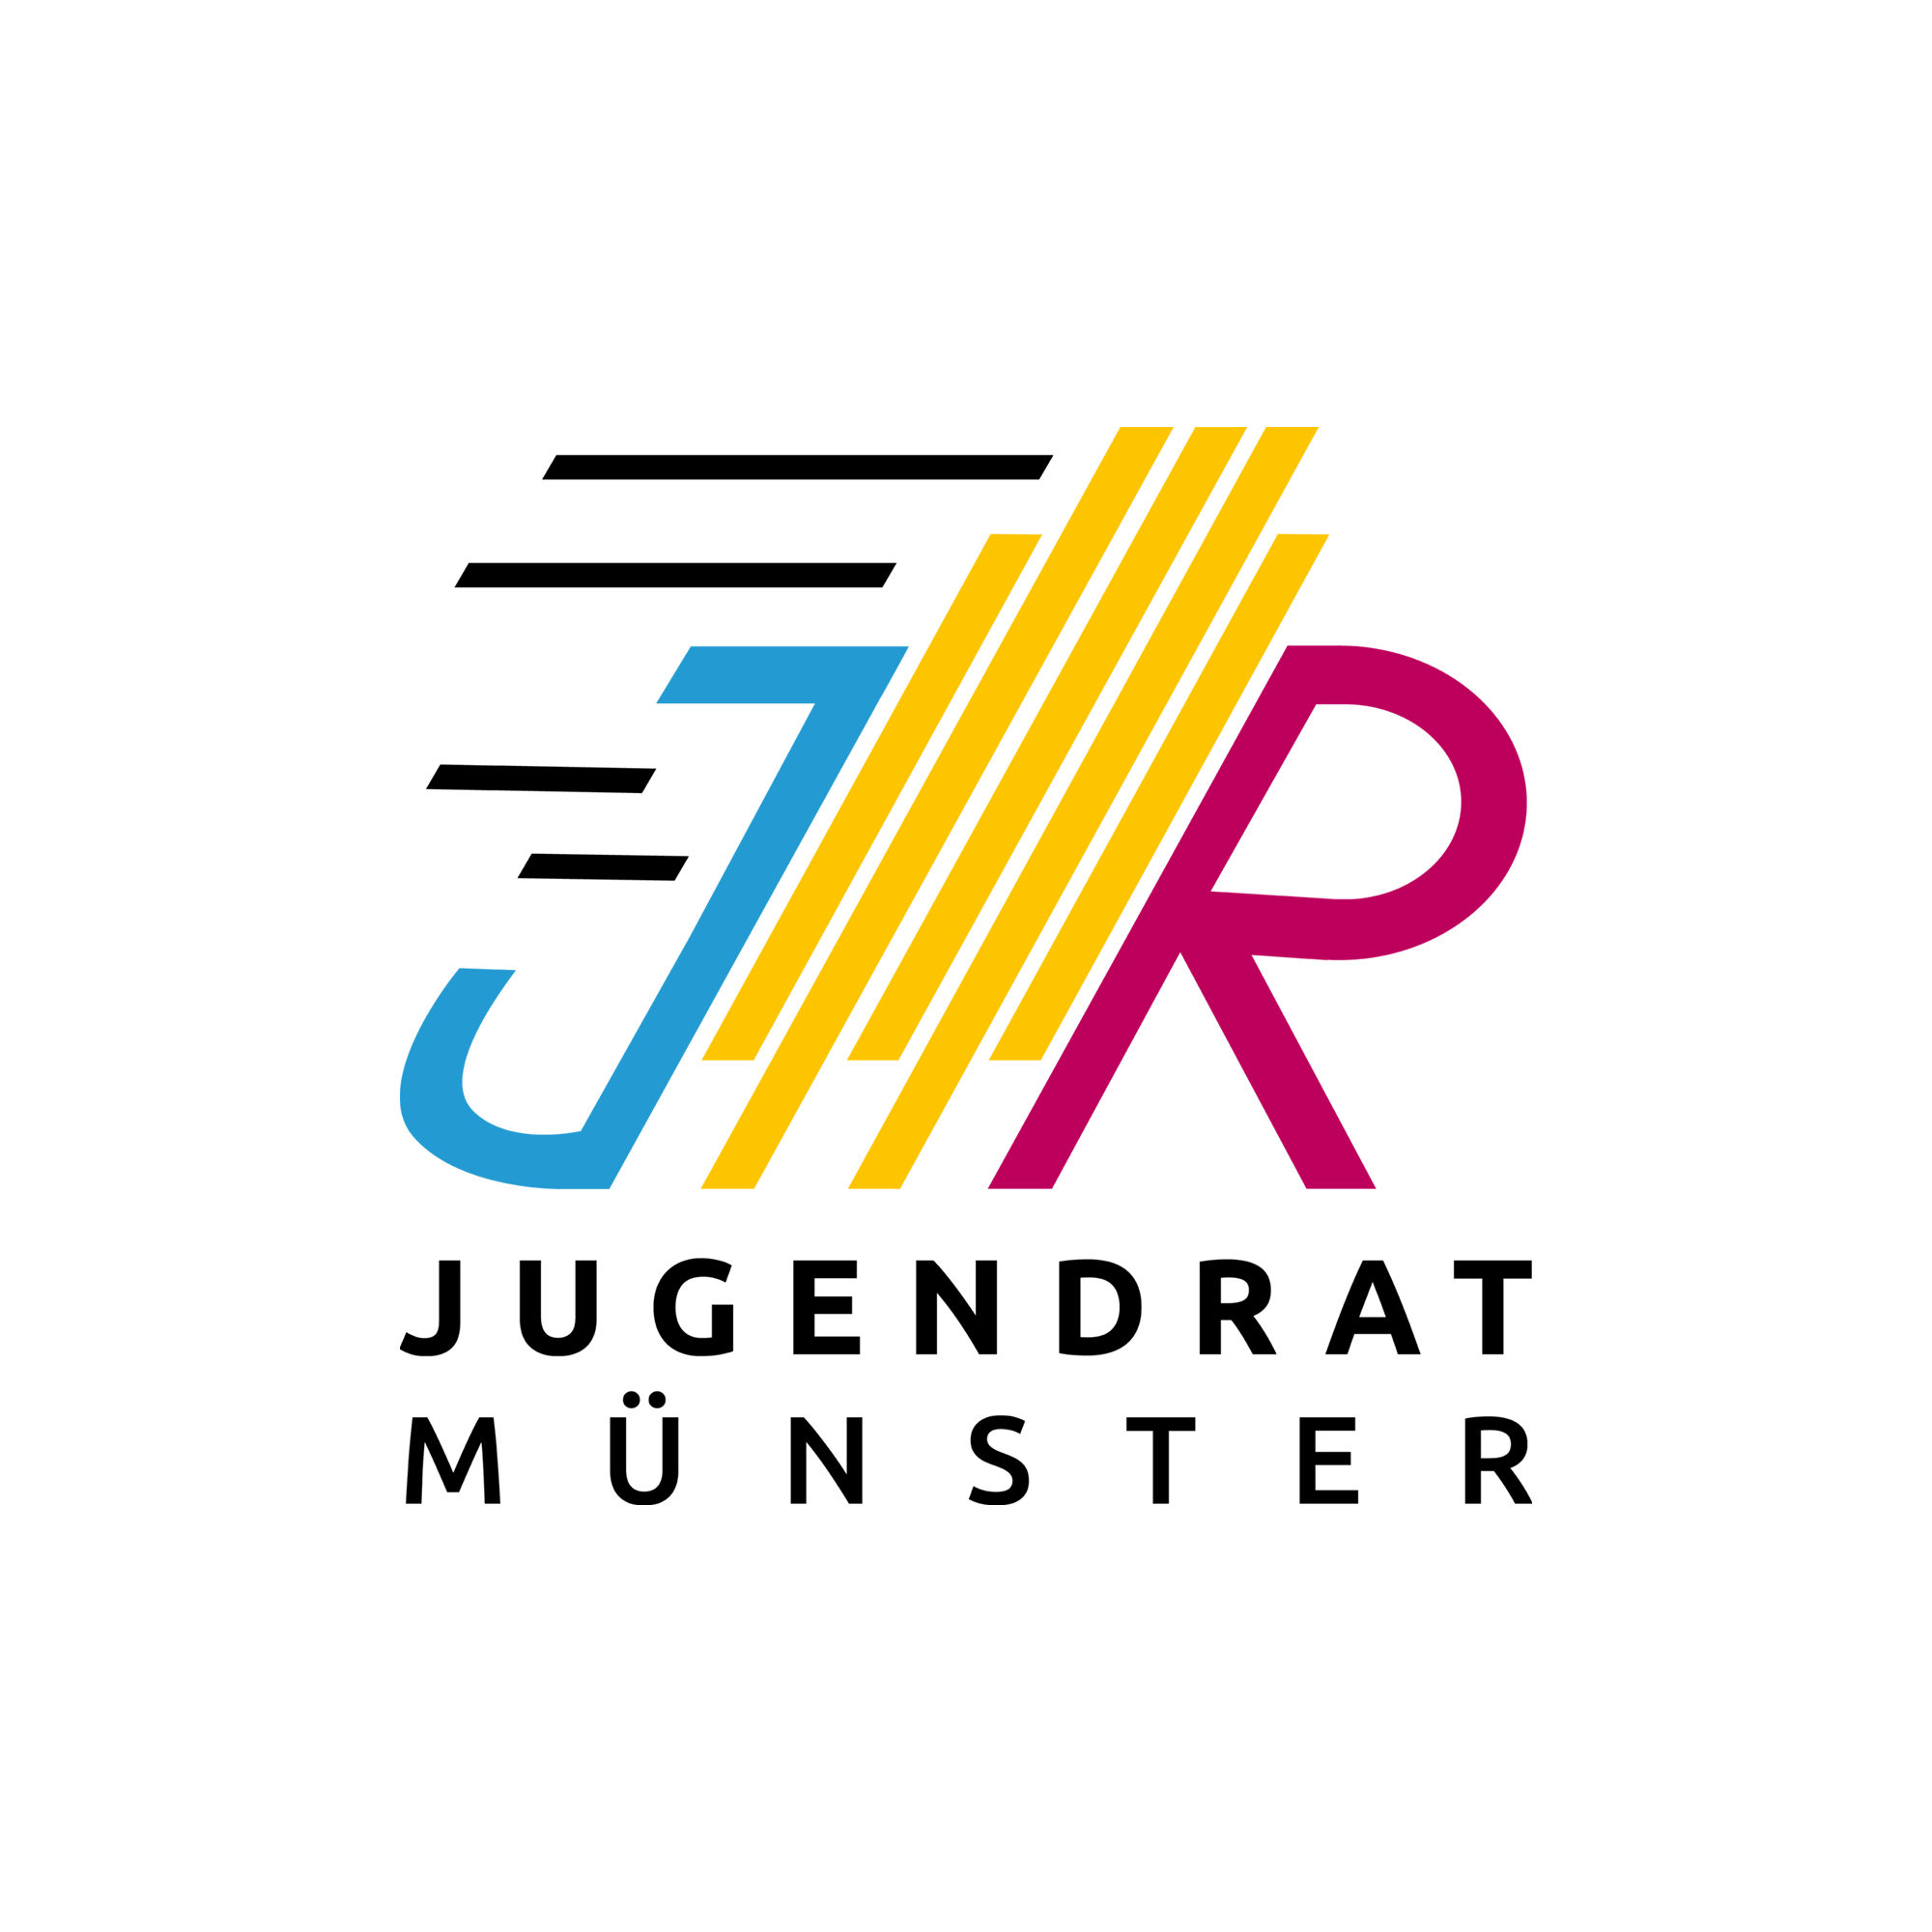 Auf dem Bild ist das Logo des Jugendrats abgebildet. Das Logo besteht aus den Buchstaben J und R in gelb und rot. In der Mitte ist in gelb das Rathausgebäude angedeutet. Darunter steht Jugendrat Münster.